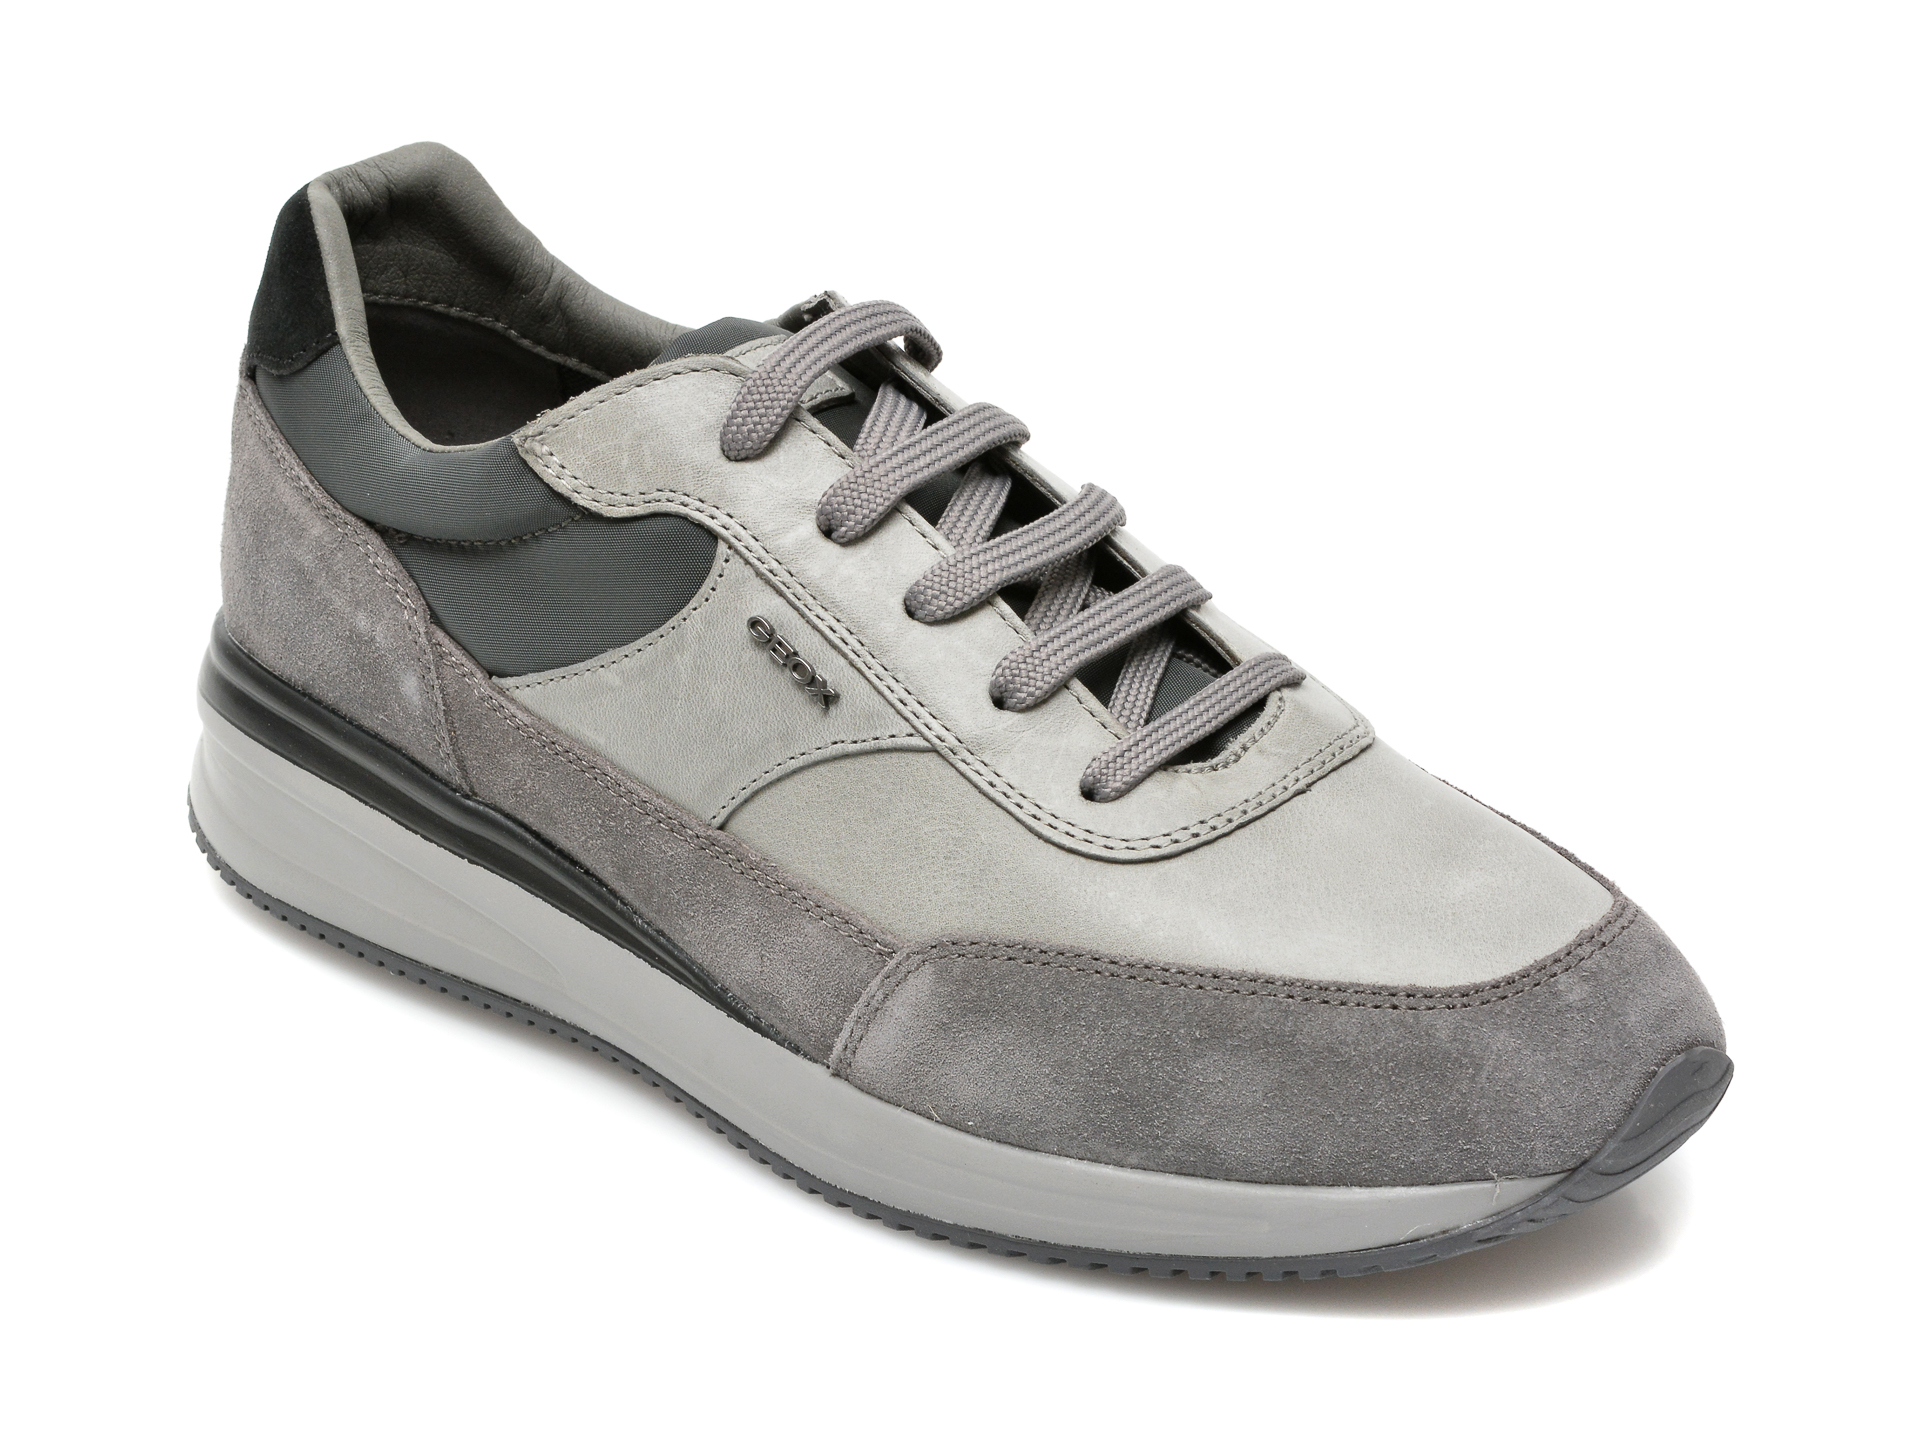 Pantofi GEOX gri, U150GA, din material textil si piele naturala Geox imagine 2022 reducere